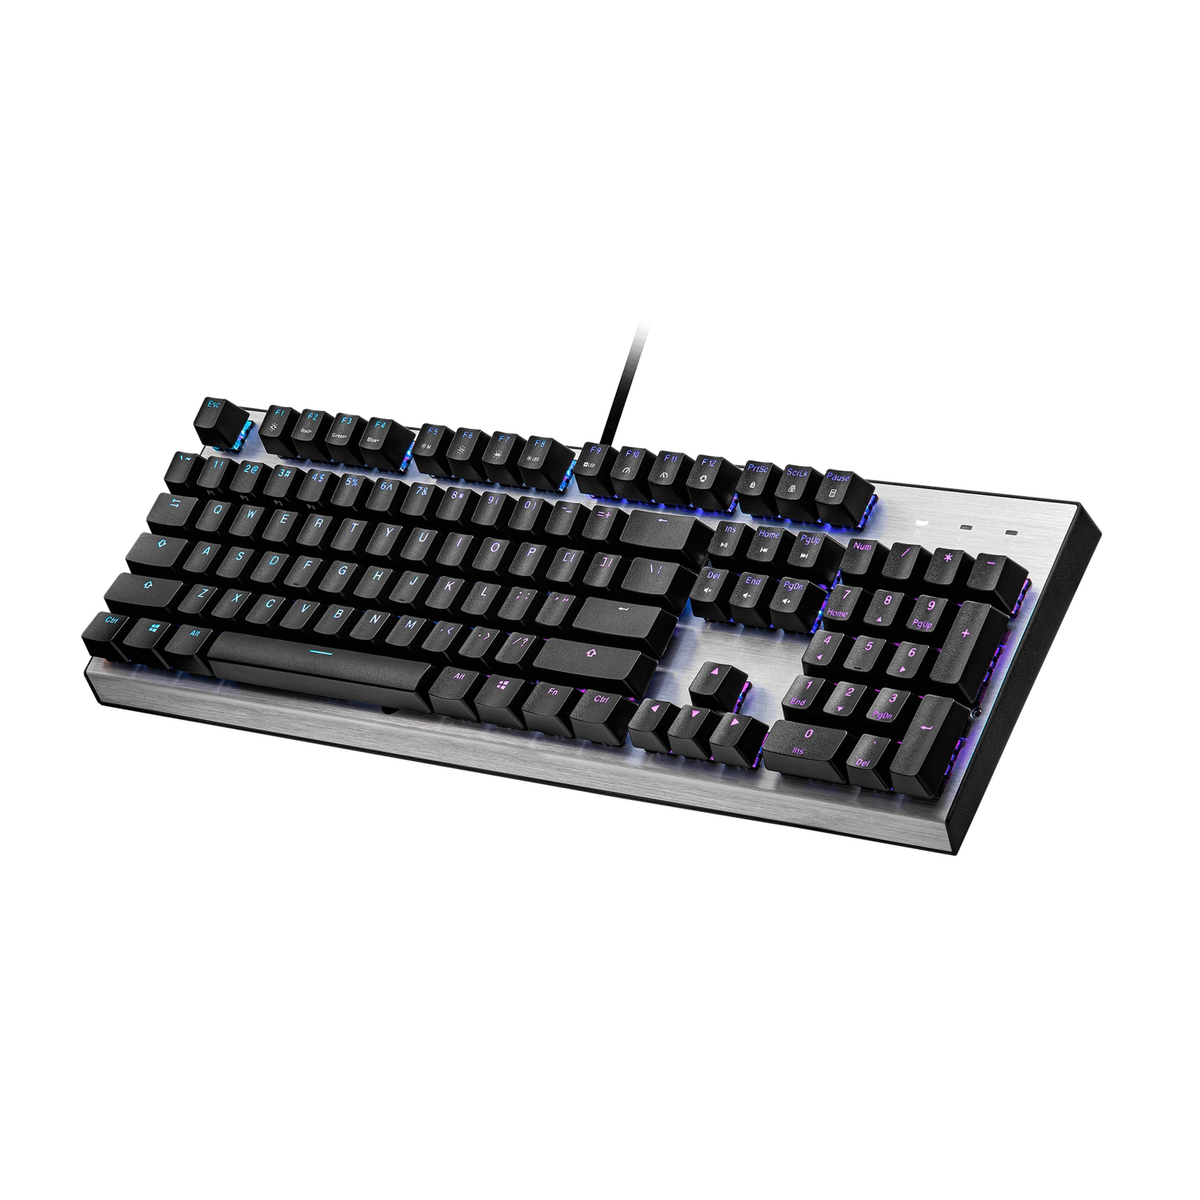 COOLER CK-351-SKOL1-US, MASTER Gaming Tastatur